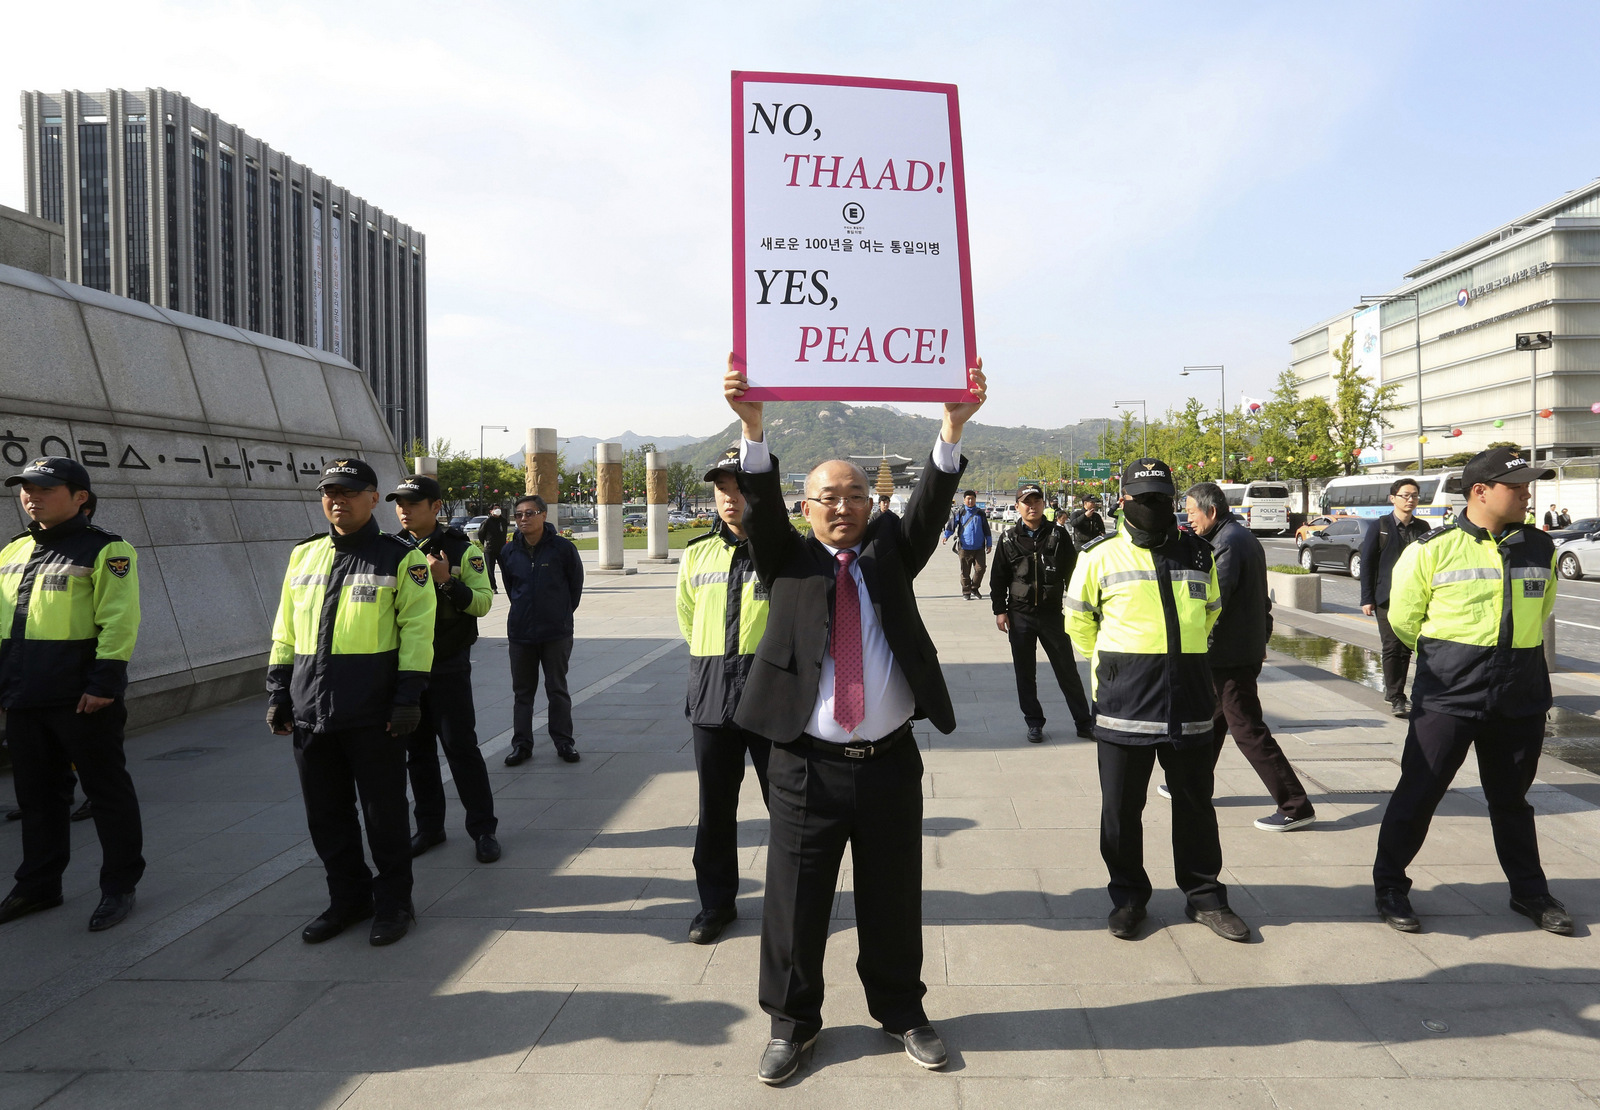 Южнокорейский протестующий держит плакат против плана развертывания американской системы противоракетной обороны под названием Терминал по высокоразвитой зоне обороны или ТААД около посольства США в Сеуле, Южная Корея, 27 апреля 2017 года. (AP / Ahn Young- юн)